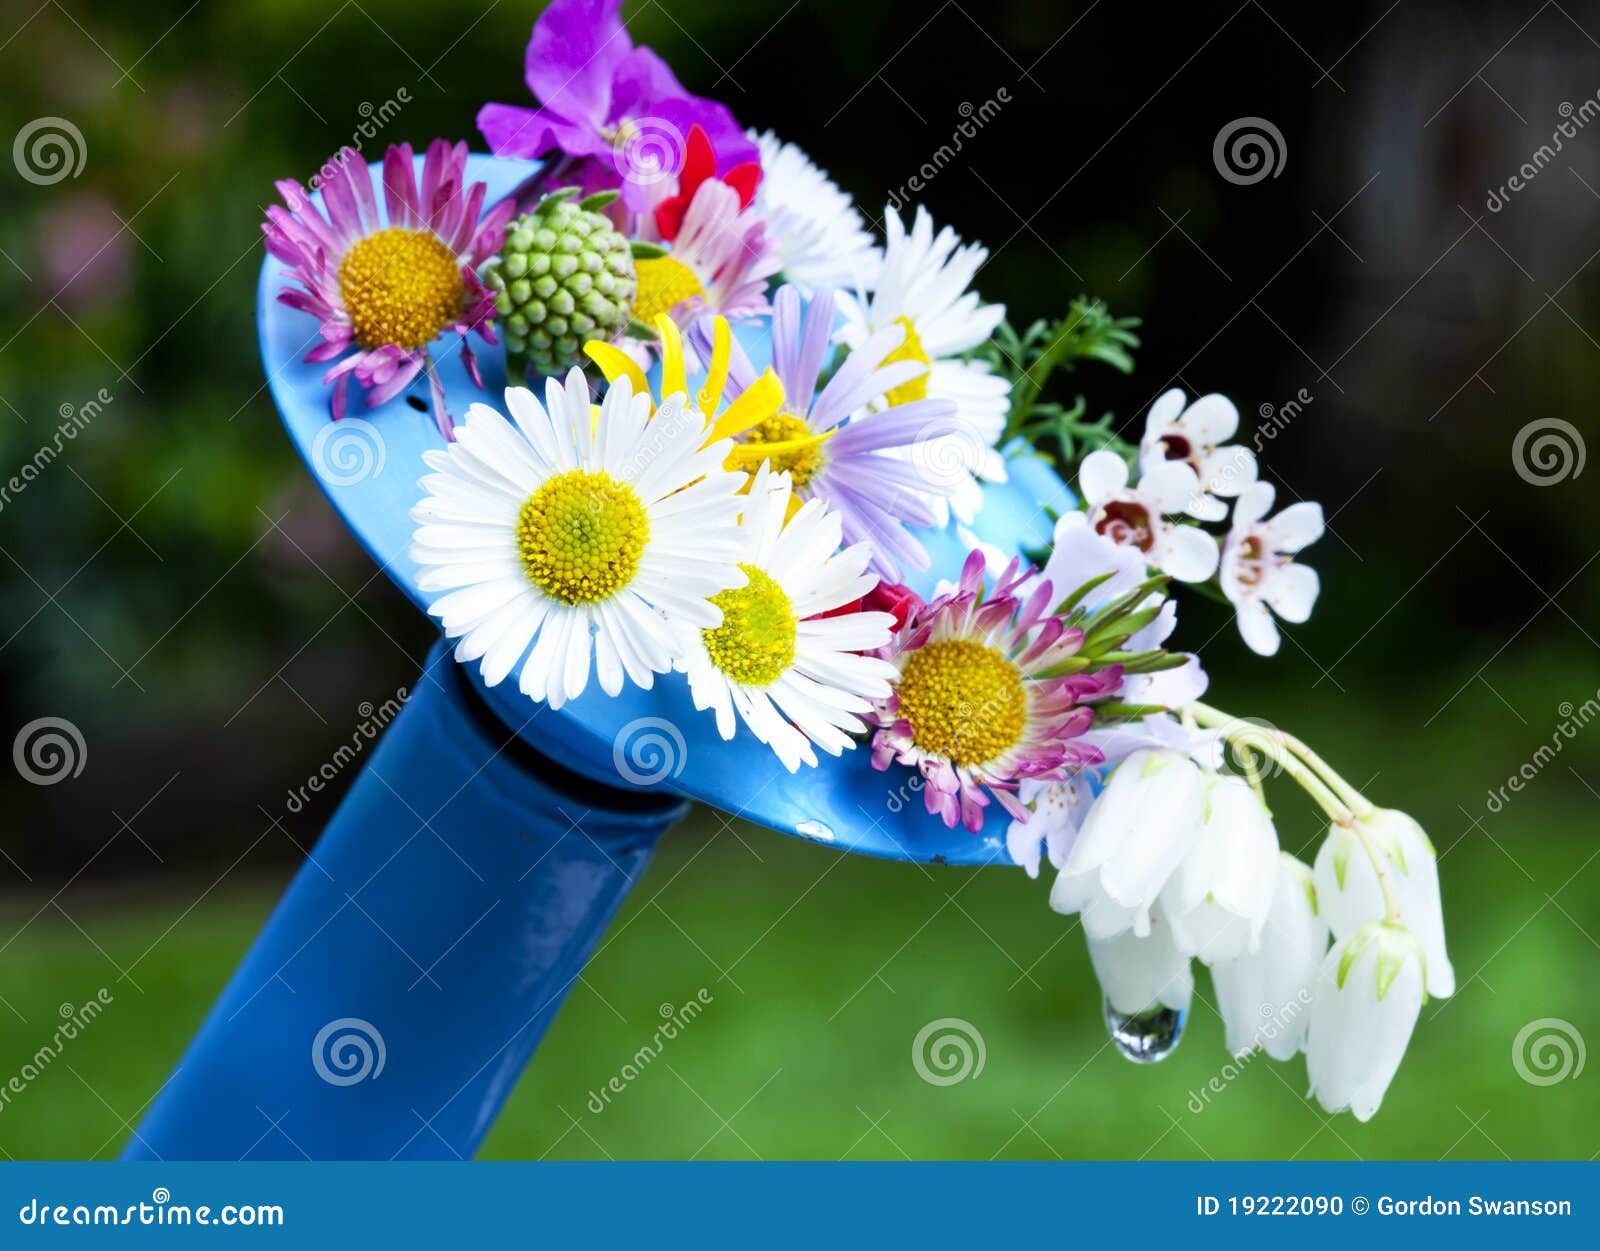 Blumen auf Bewässerungsdose. Nahaufnahme der Blumen hing an der Tülle einer blauen Bewässerungsdose ein.